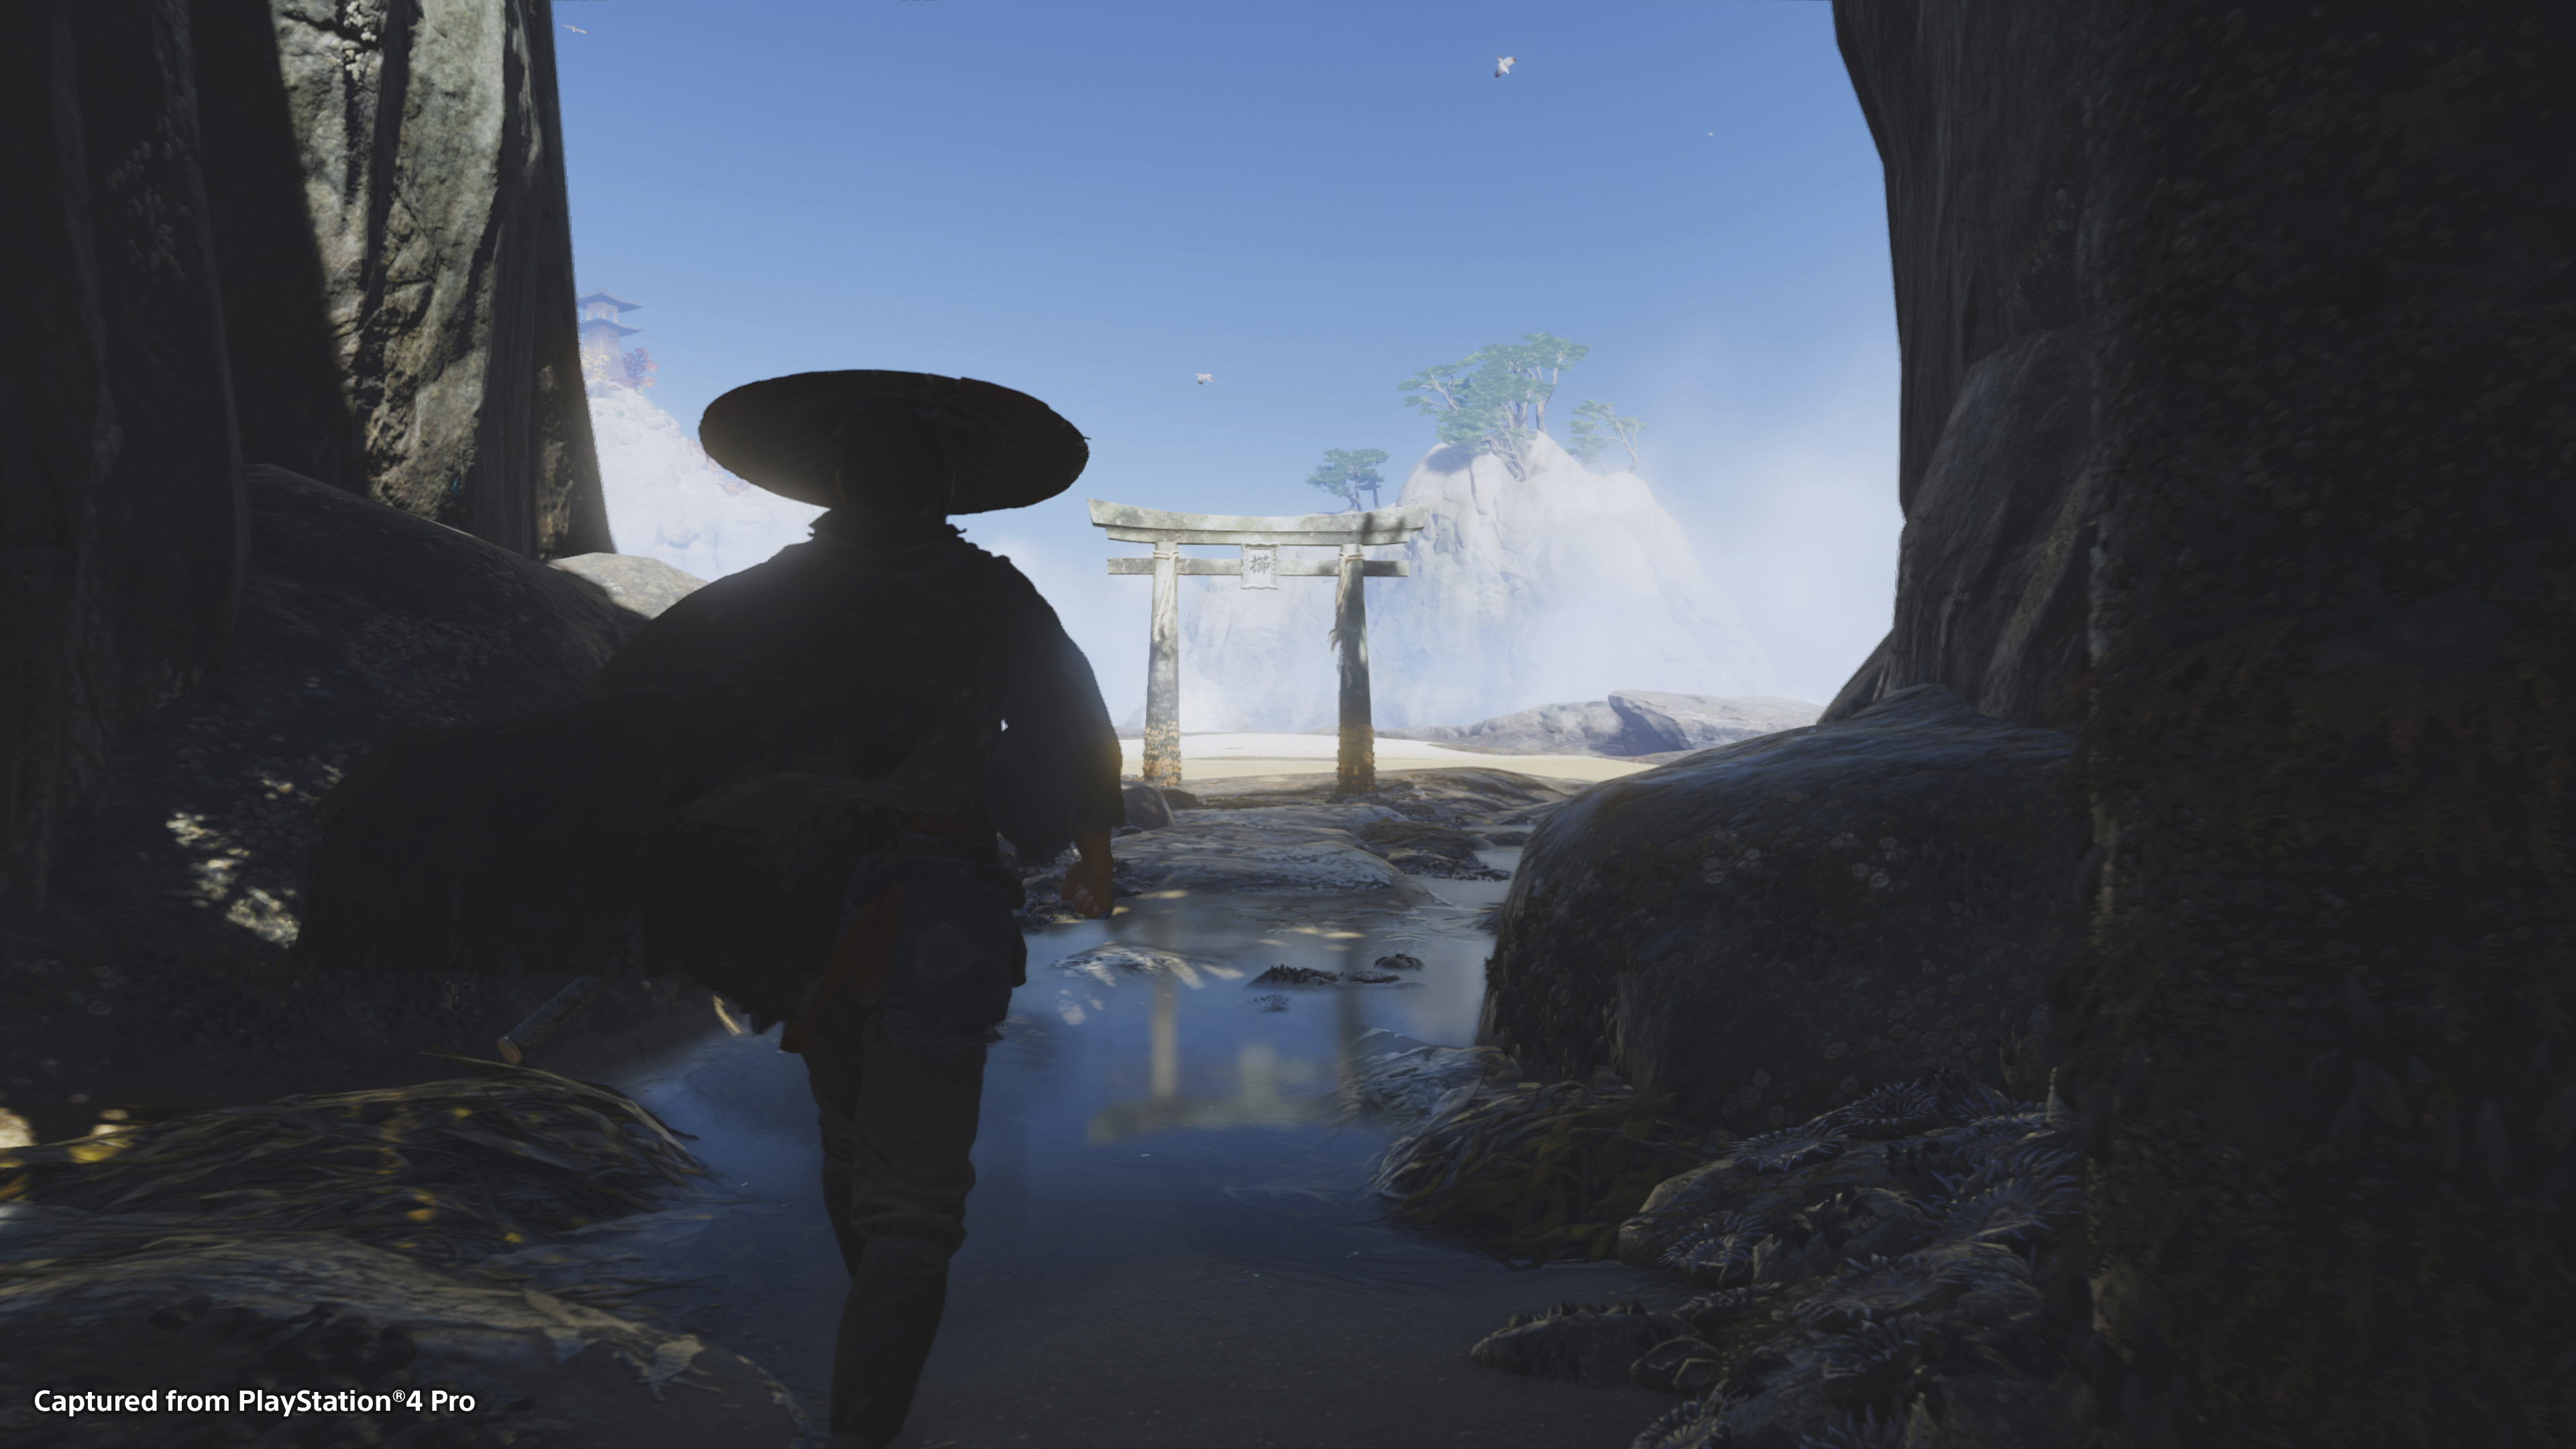 Captura de ecrã do jogo de Ghost of Tsushima que mostra a silhueta de Jin Sakai, a personagem principal, contra um céu azul brilhante.